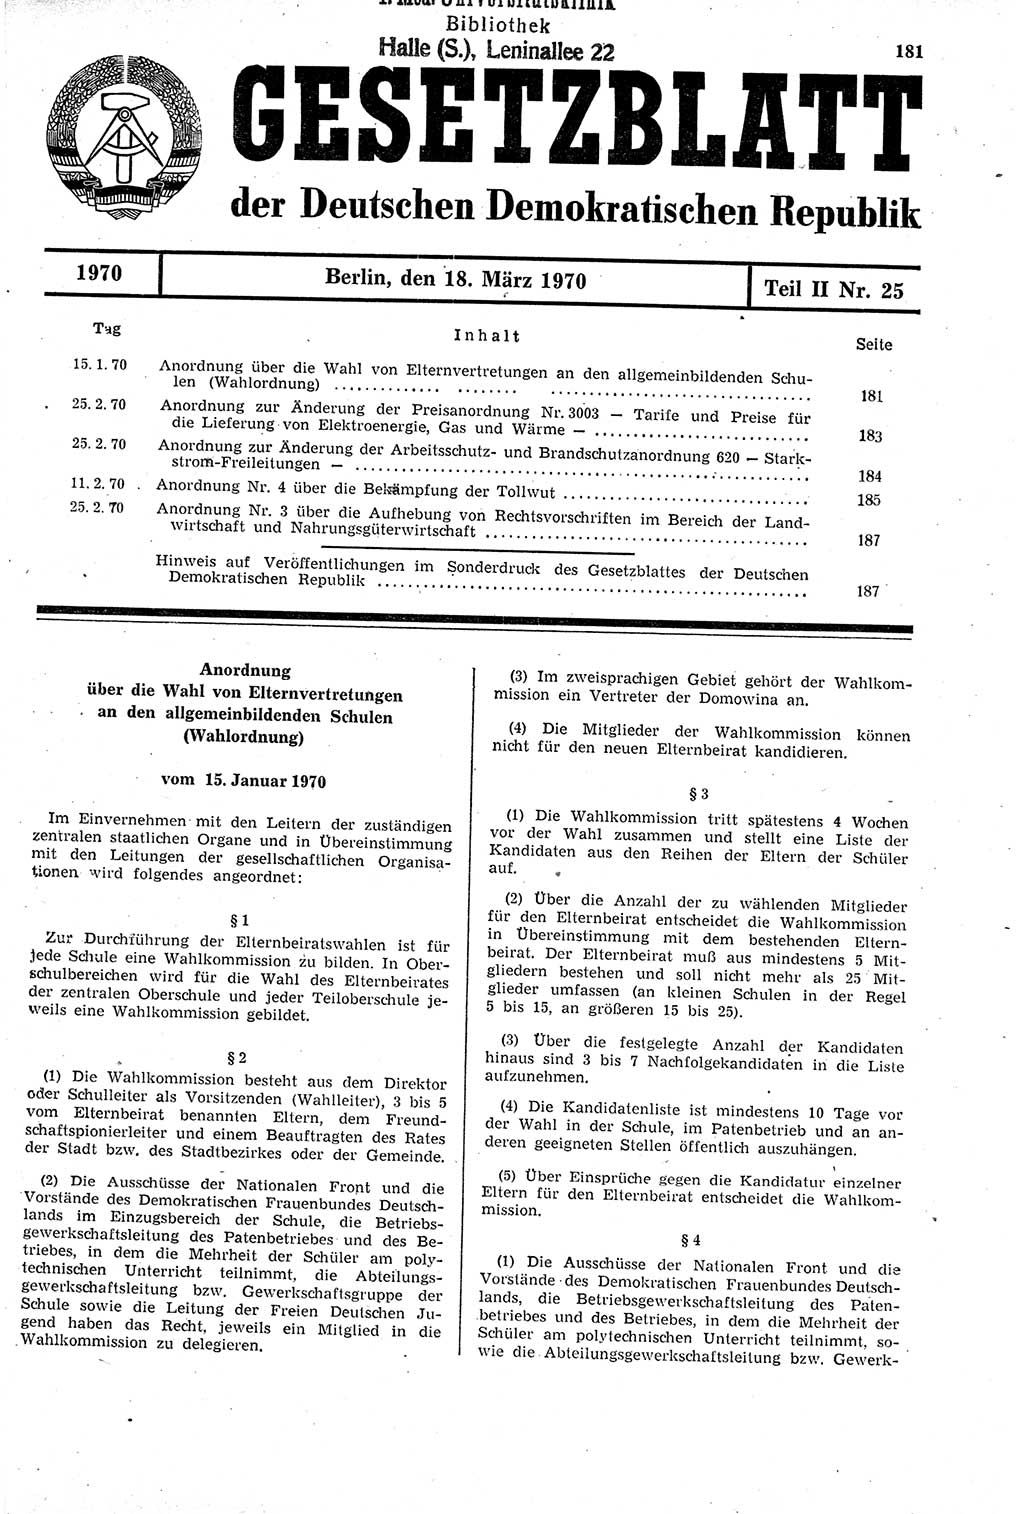 Gesetzblatt (GBl.) der Deutschen Demokratischen Republik (DDR) Teil ⅠⅠ 1970, Seite 181 (GBl. DDR ⅠⅠ 1970, S. 181)